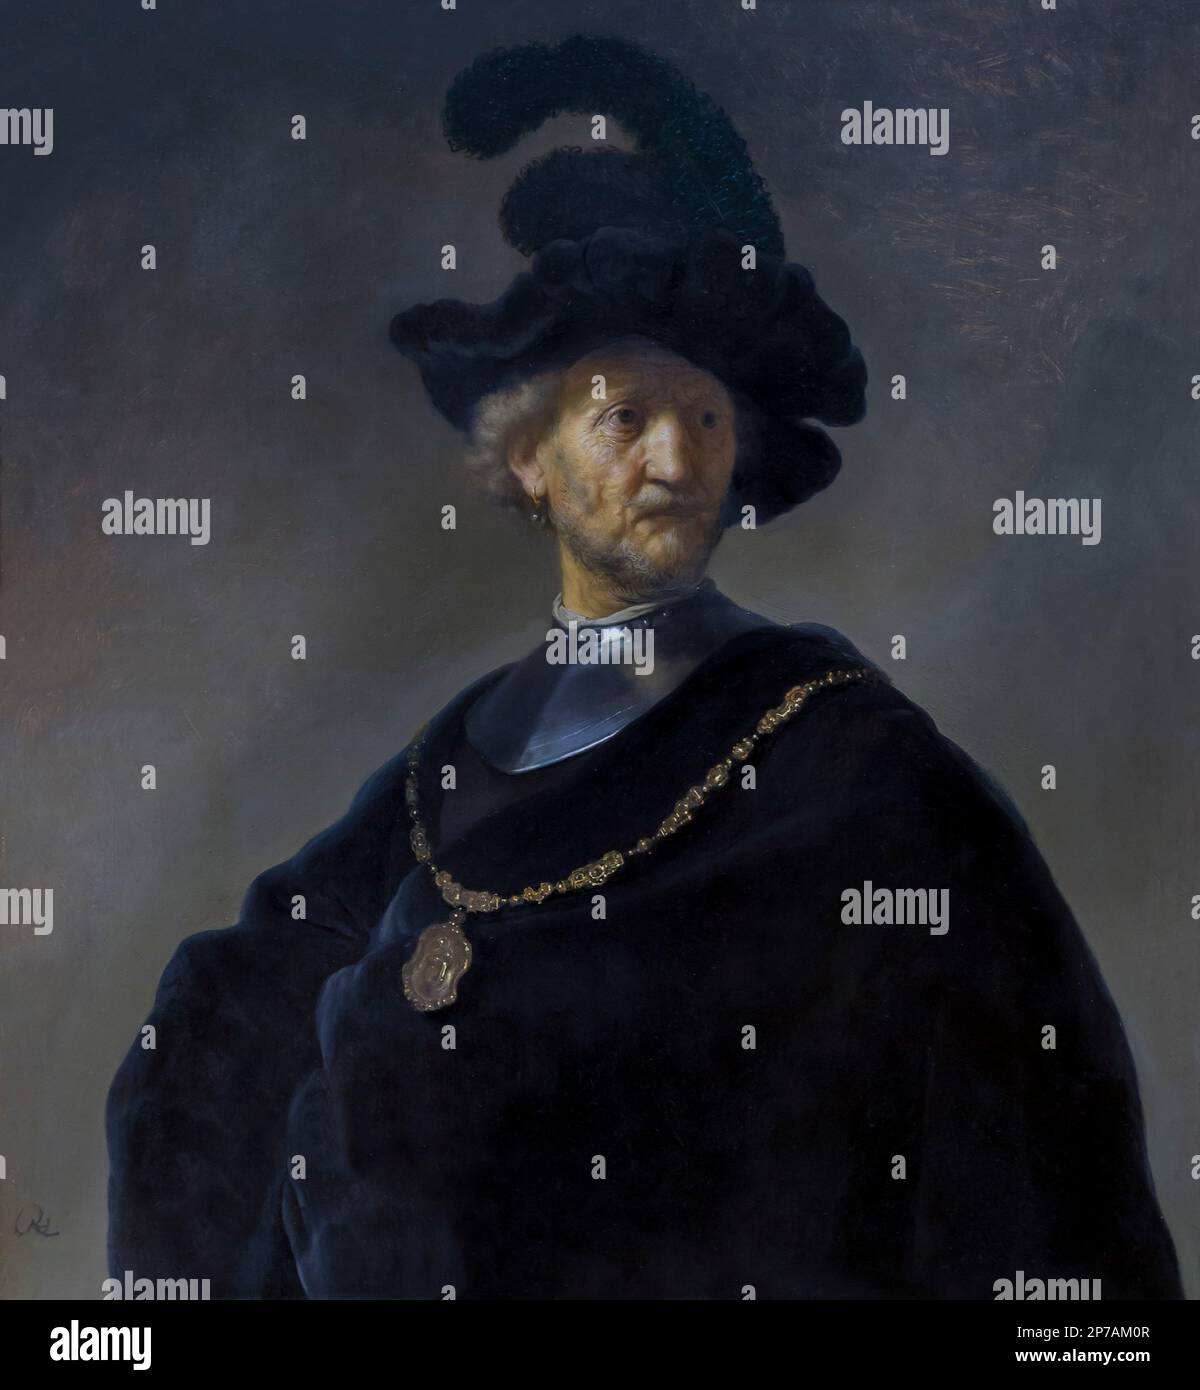 Vieil Homme avec une chaîne d'or, Rembrandt, 1631, Art Institute of Chicago, Chicago, Illinois, USA, Amérique du Nord, Banque D'Images